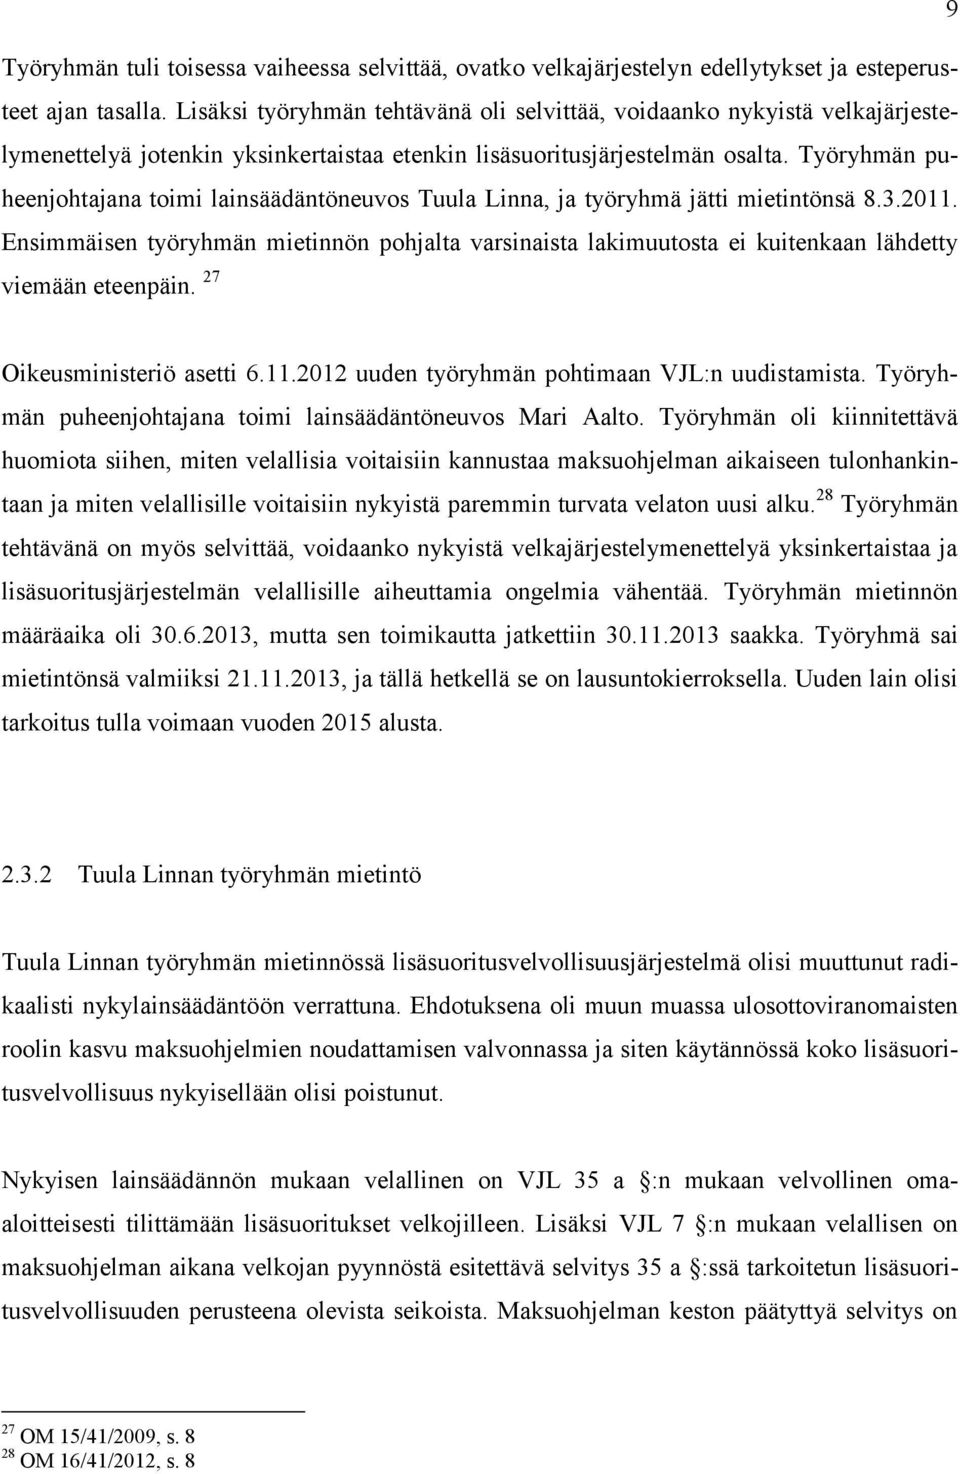 Työryhmän puheenjohtajana toimi lainsäädäntöneuvos Tuula Linna, ja työryhmä jätti mietintönsä 8.3.2011.